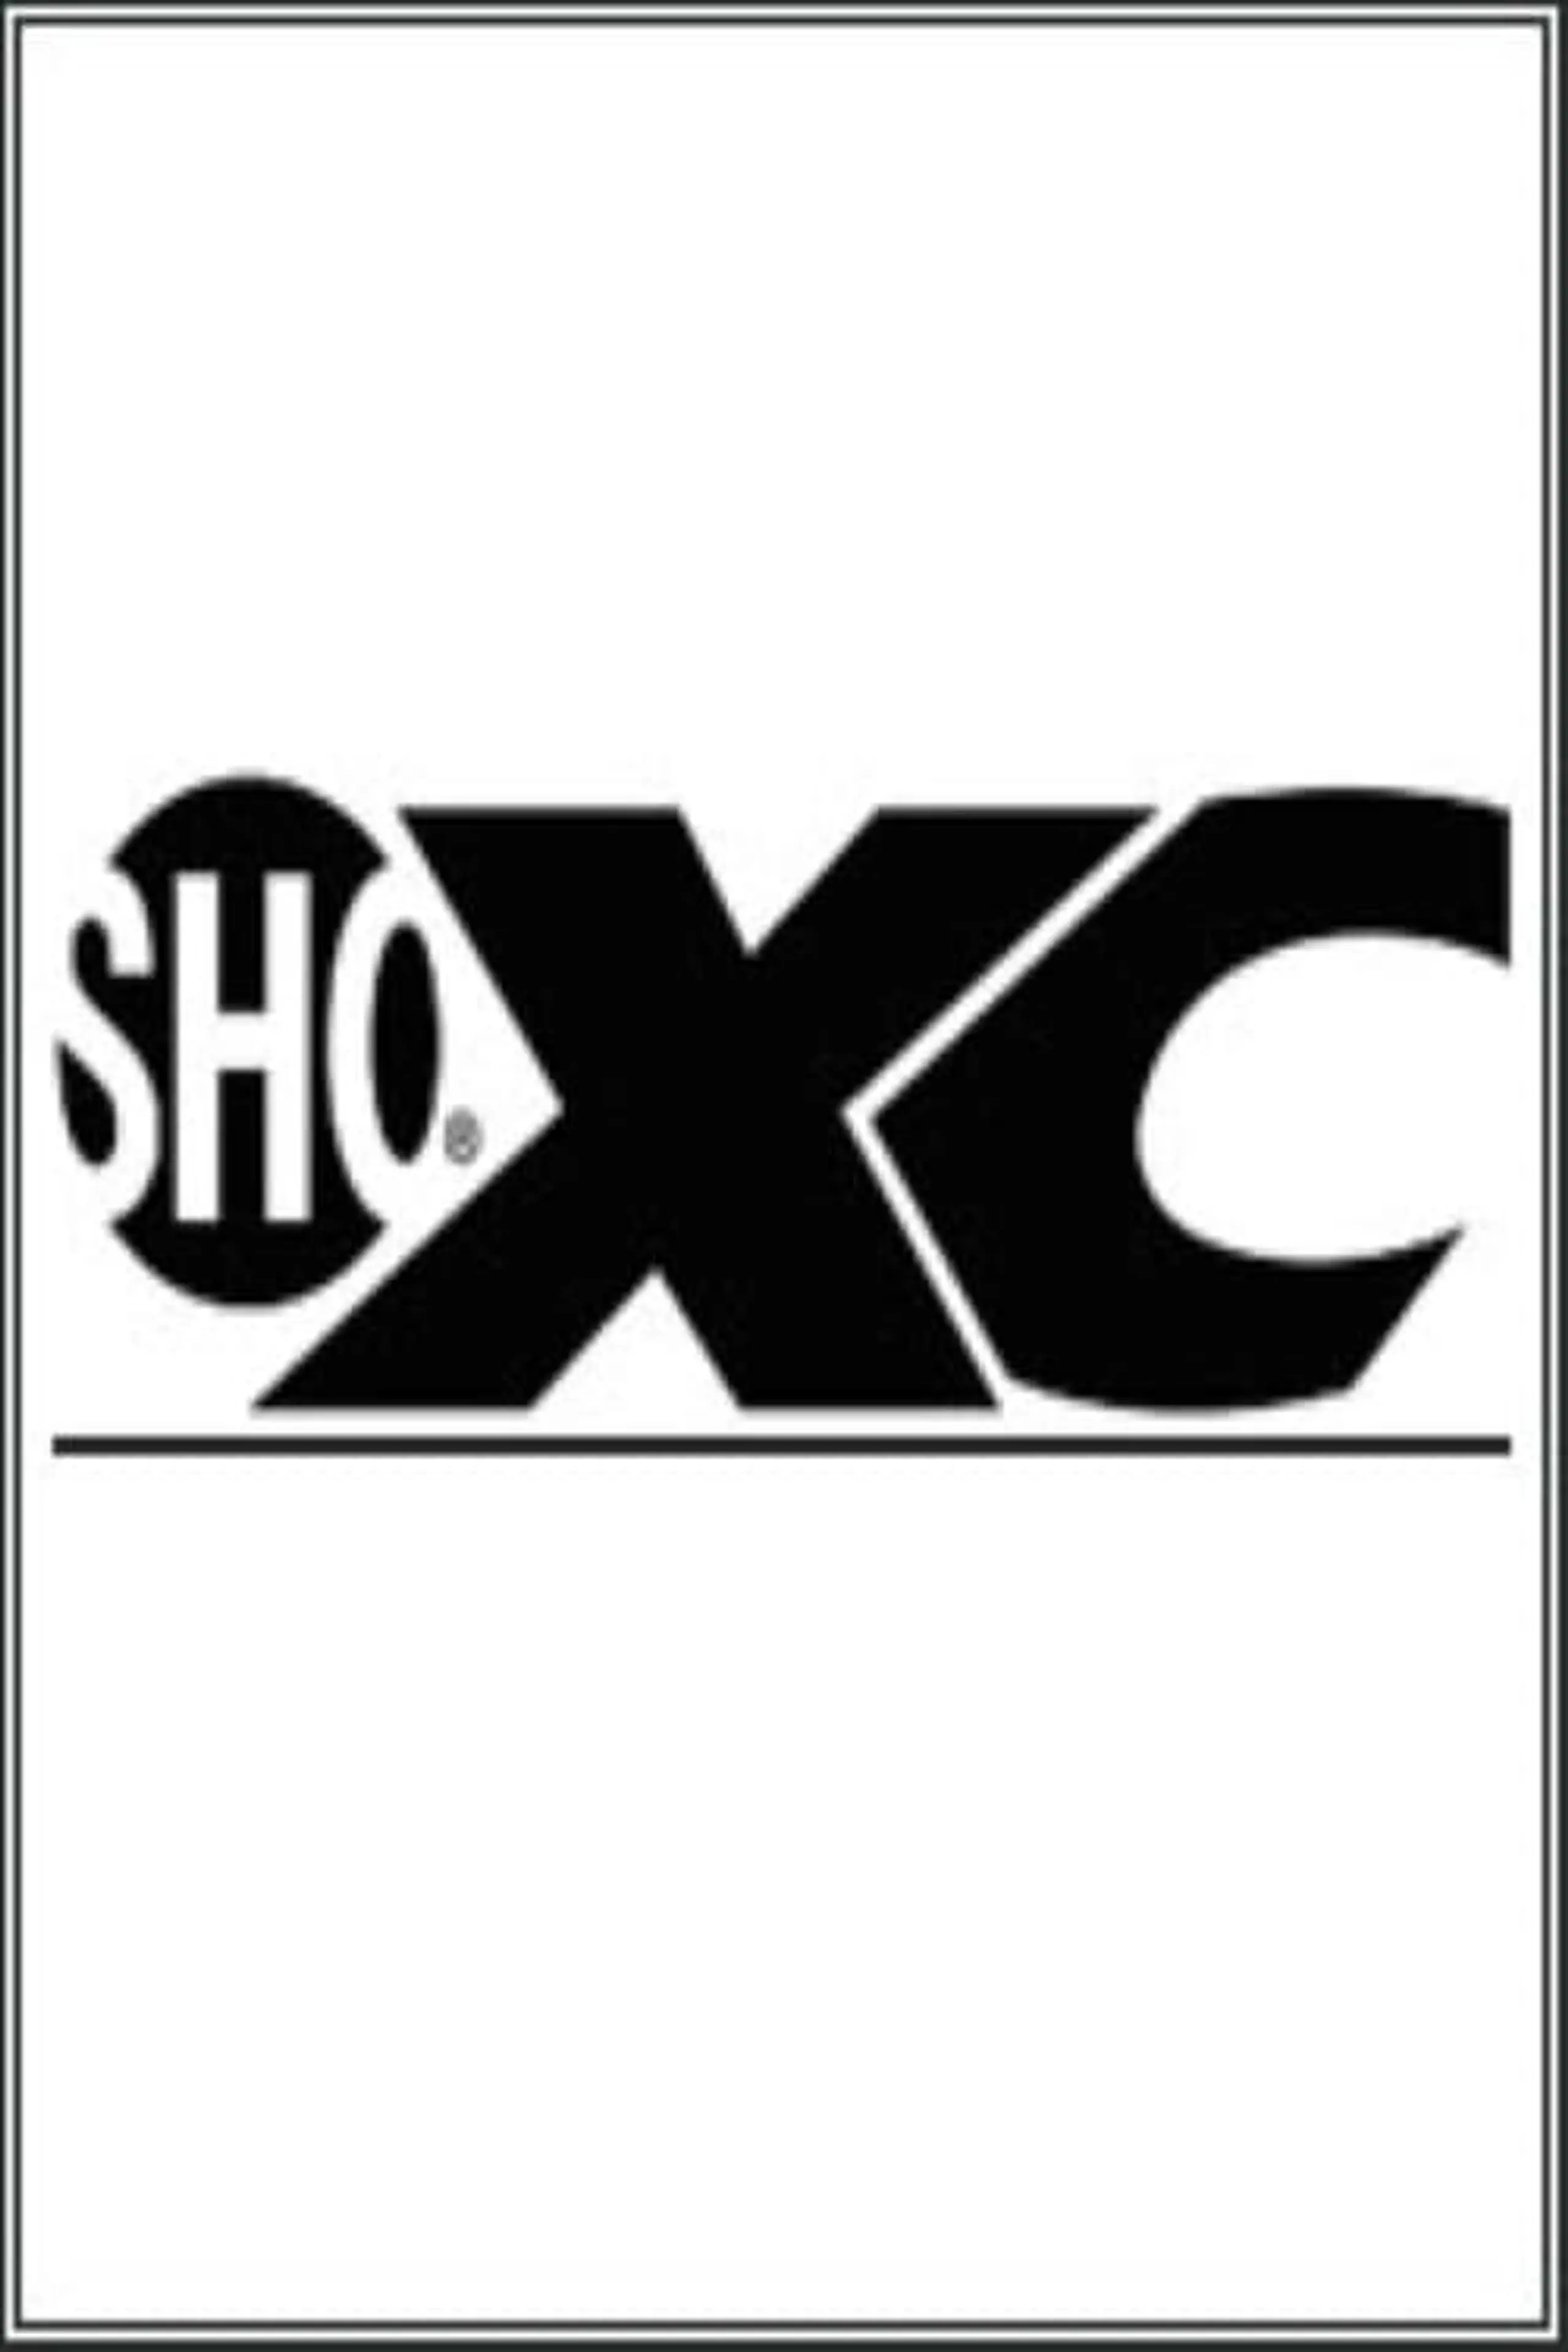 ShoXC 6: Suganuma vs. Hamman